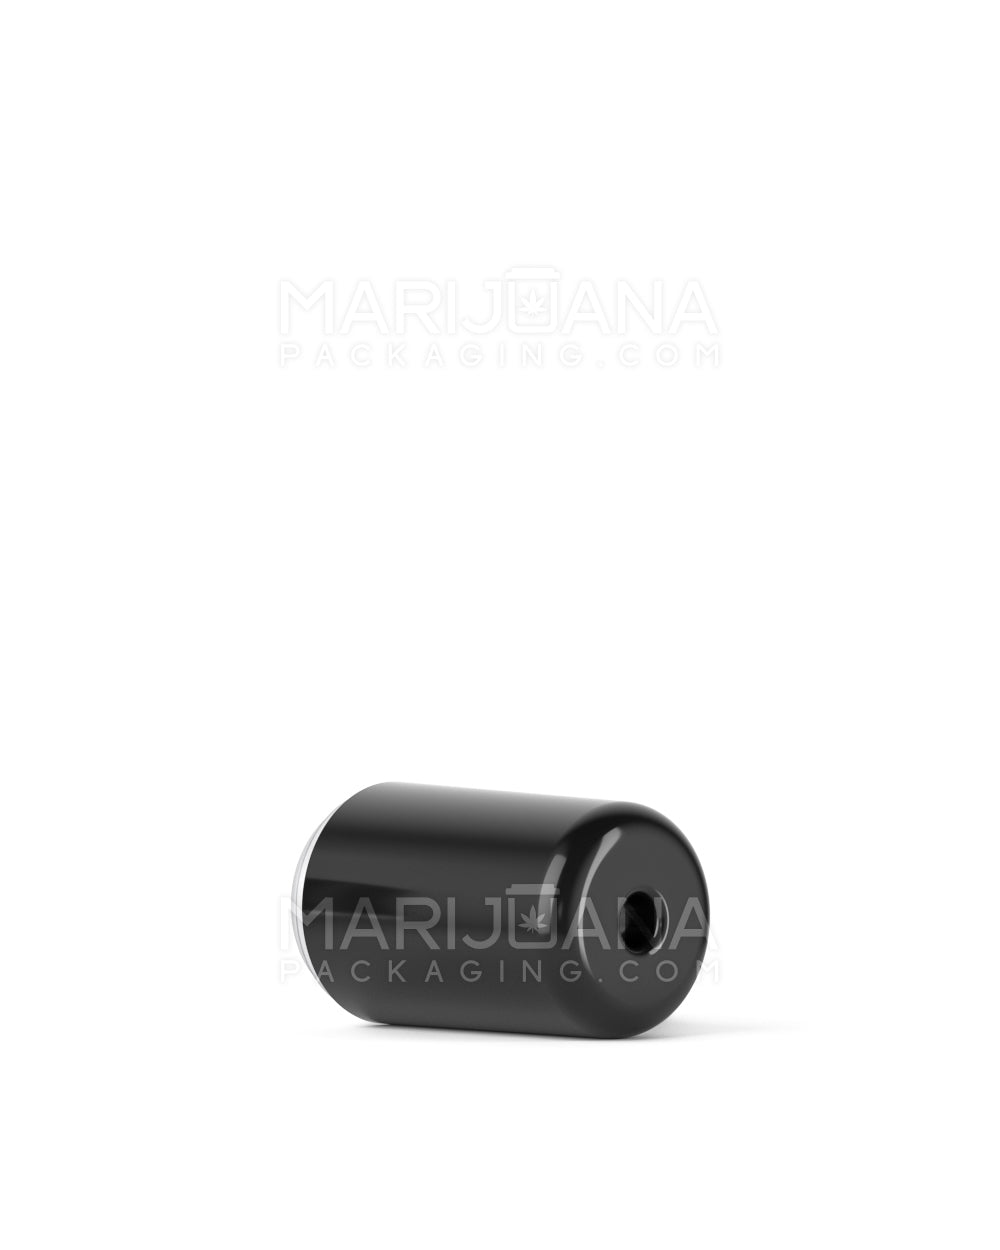 RAE | Round Vape Mouthpiece for Arbor Press Ceramic Cartridges | Black Ceramic - Arbor Press - 400 Count